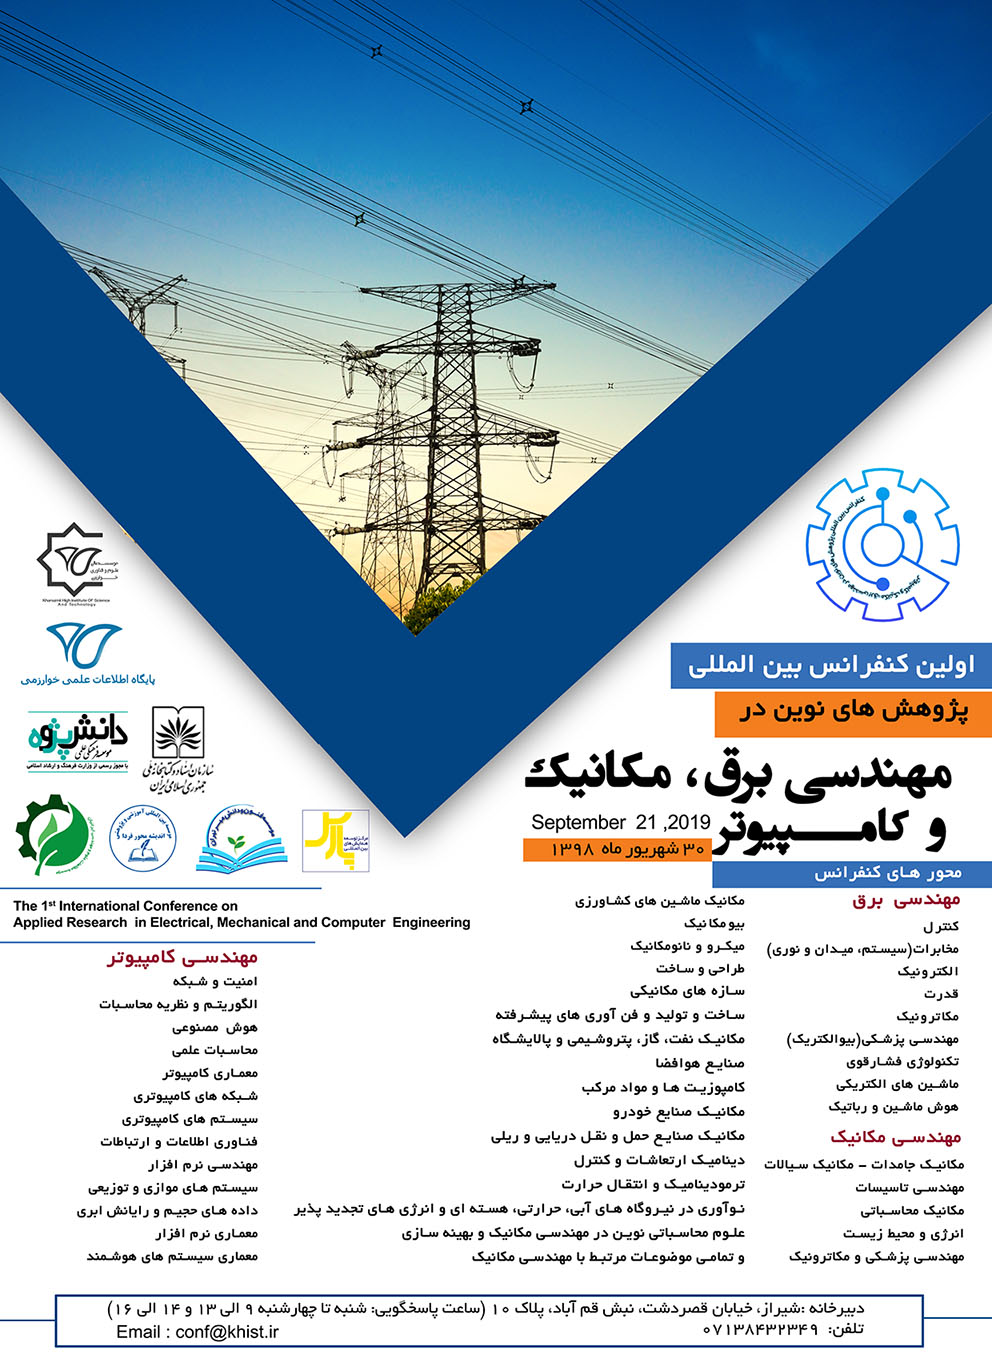 پوستر اولین کنفرانس بین المللی پژوهش های نوین در مهندسی برق، مکانیک و کامپیوتر